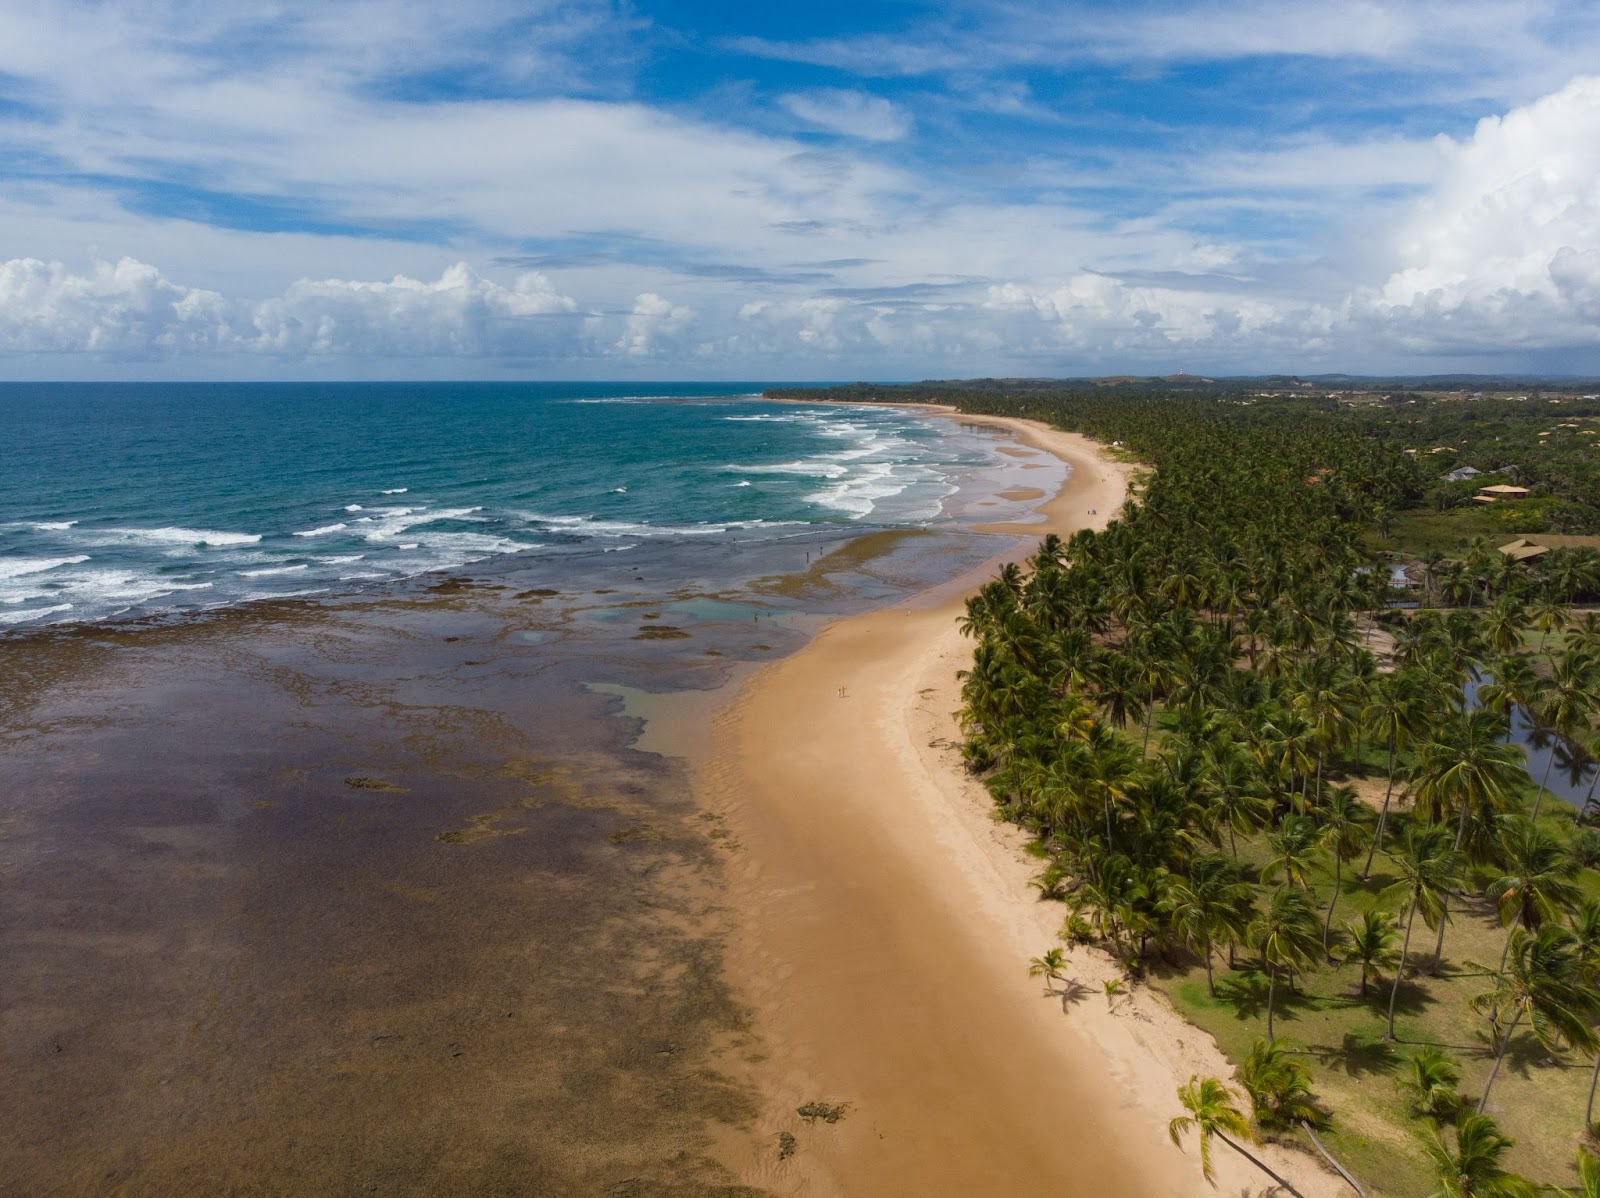 Vista aérea panorâmica de praia com mar azul ao horizonte, chegando a parte cristalina revelando os corais debaixo d’água. Ao lado direito, vasta área verde com coqueiros.